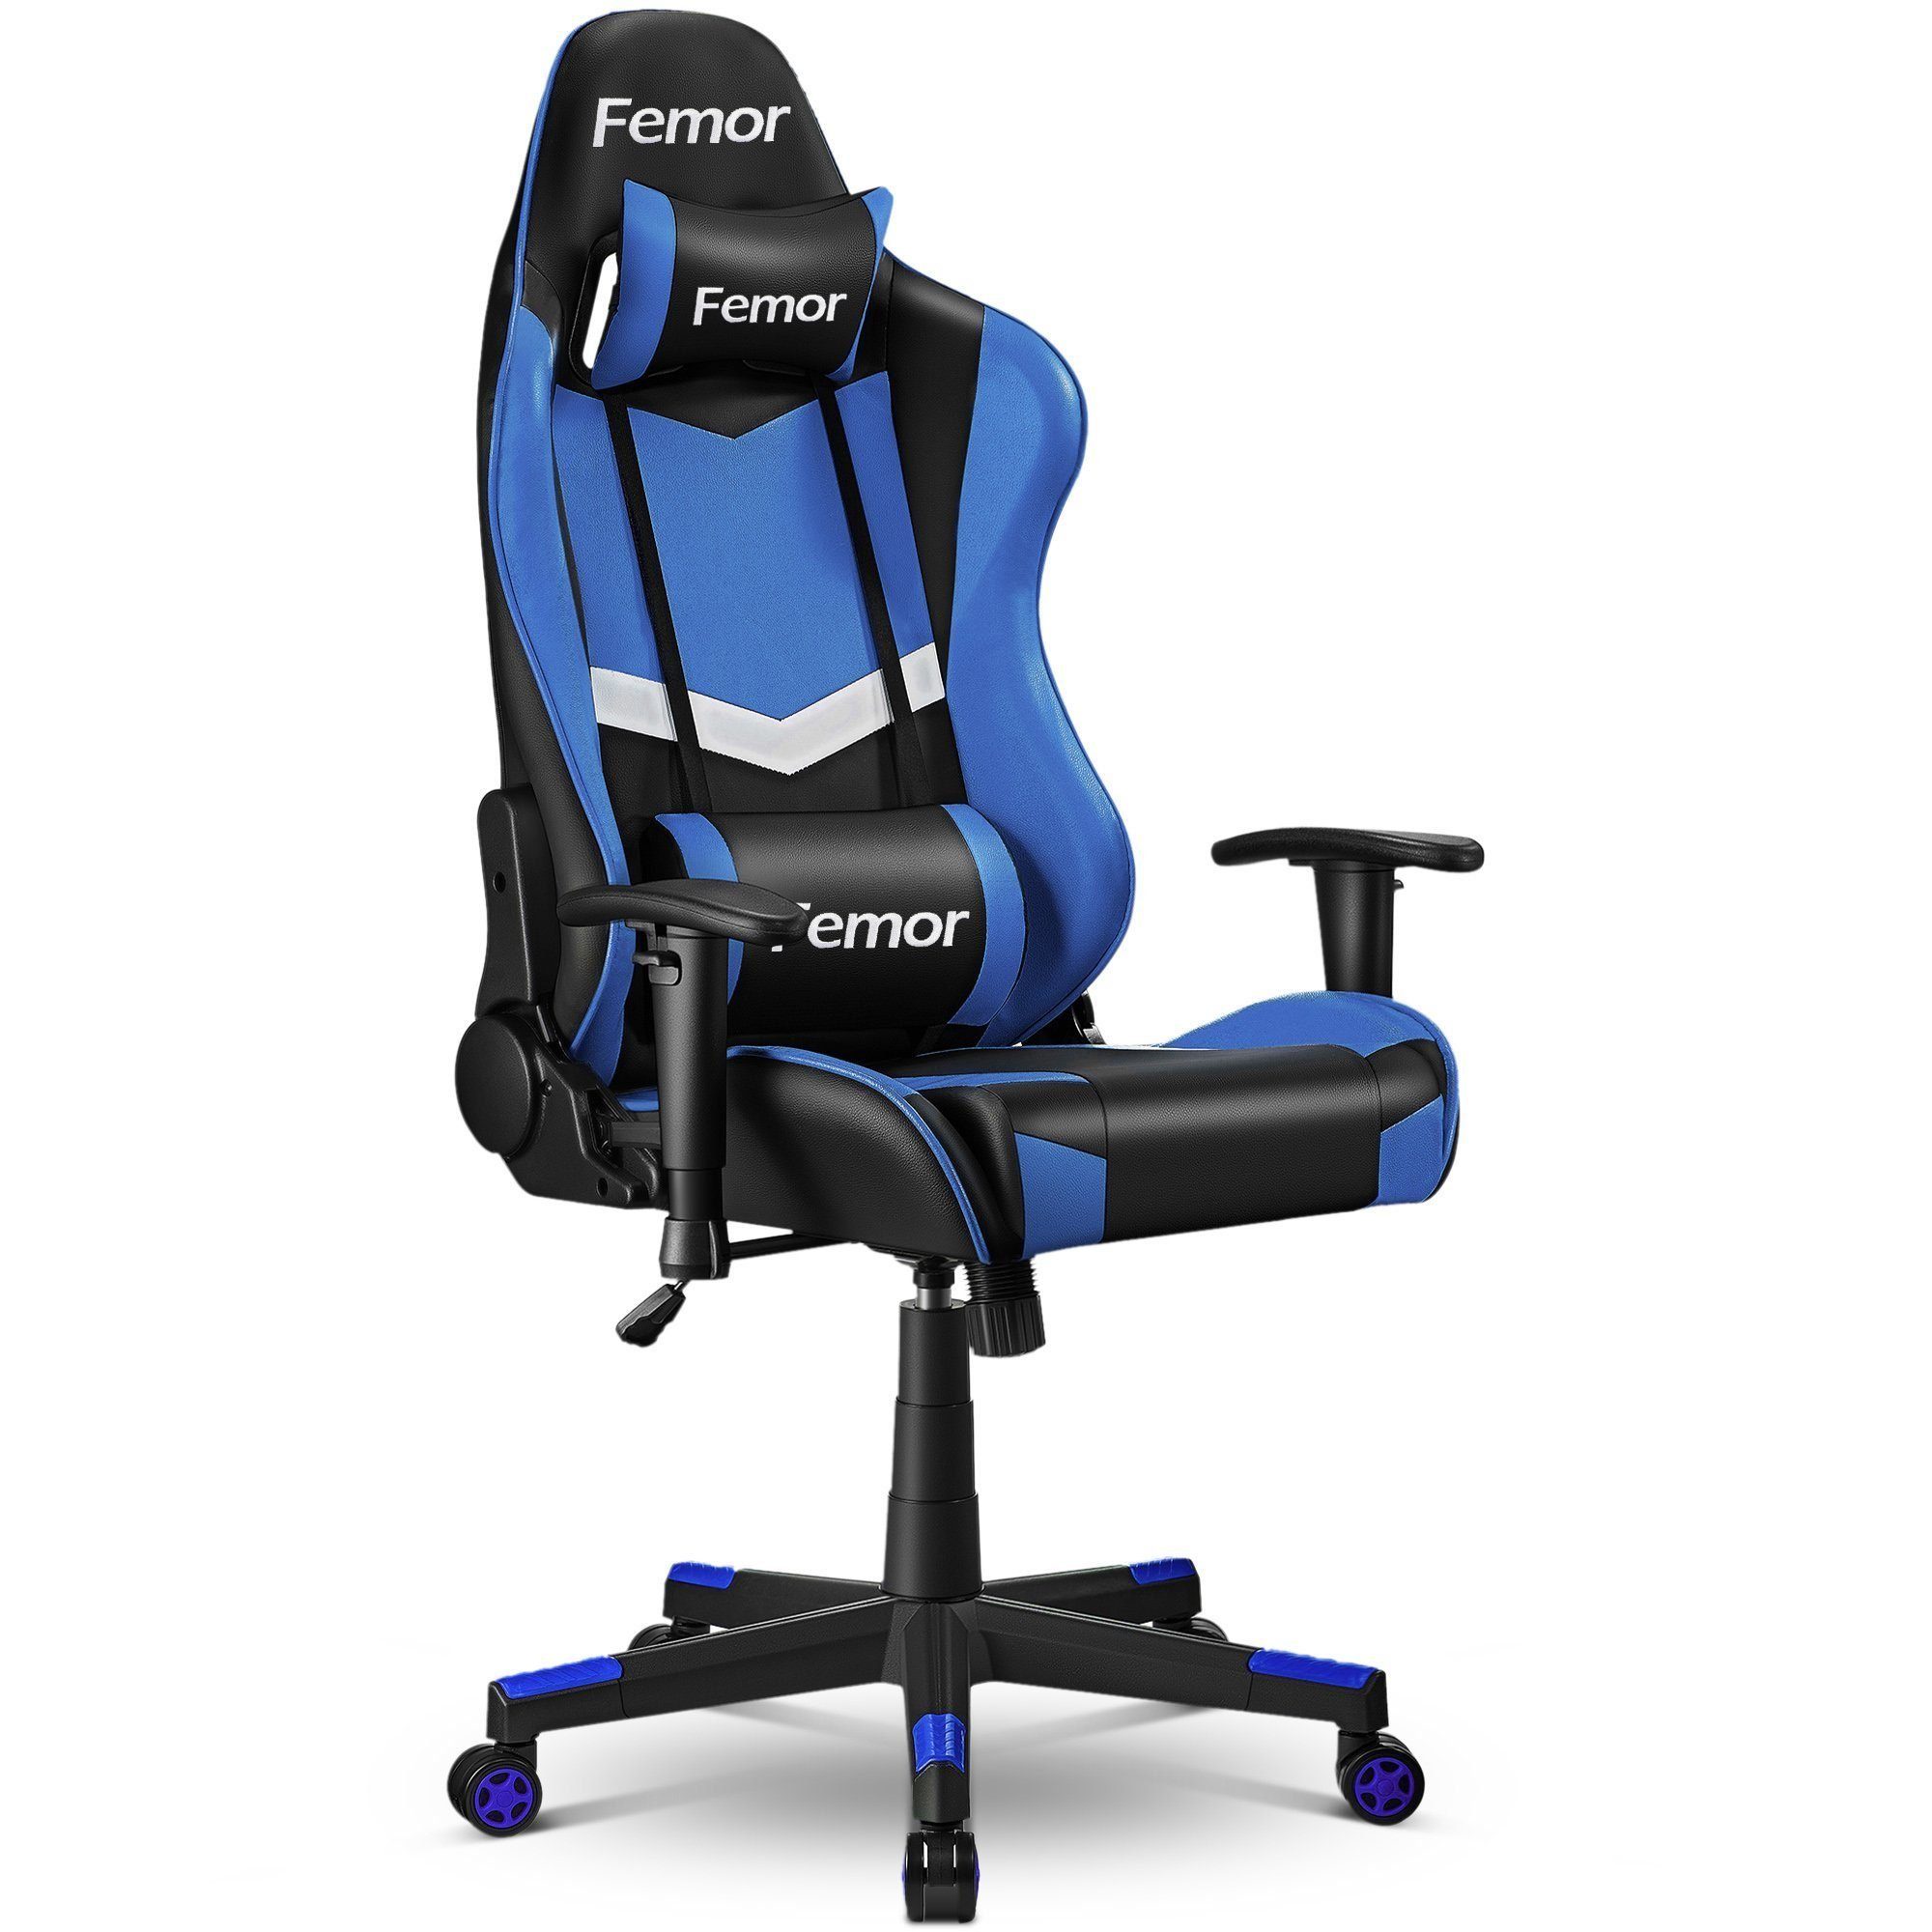 Femor Gaming Chair Gaming-Stuhl, 90°-160° Neigungswinkel, Gamer Stuhl mit  Einstellbare Armlehne, Ergonomischer Schreibtischstuhl mit  Höhenverstellbarer Einteiliger Stahlrahmen, Belastbar bis 200kg